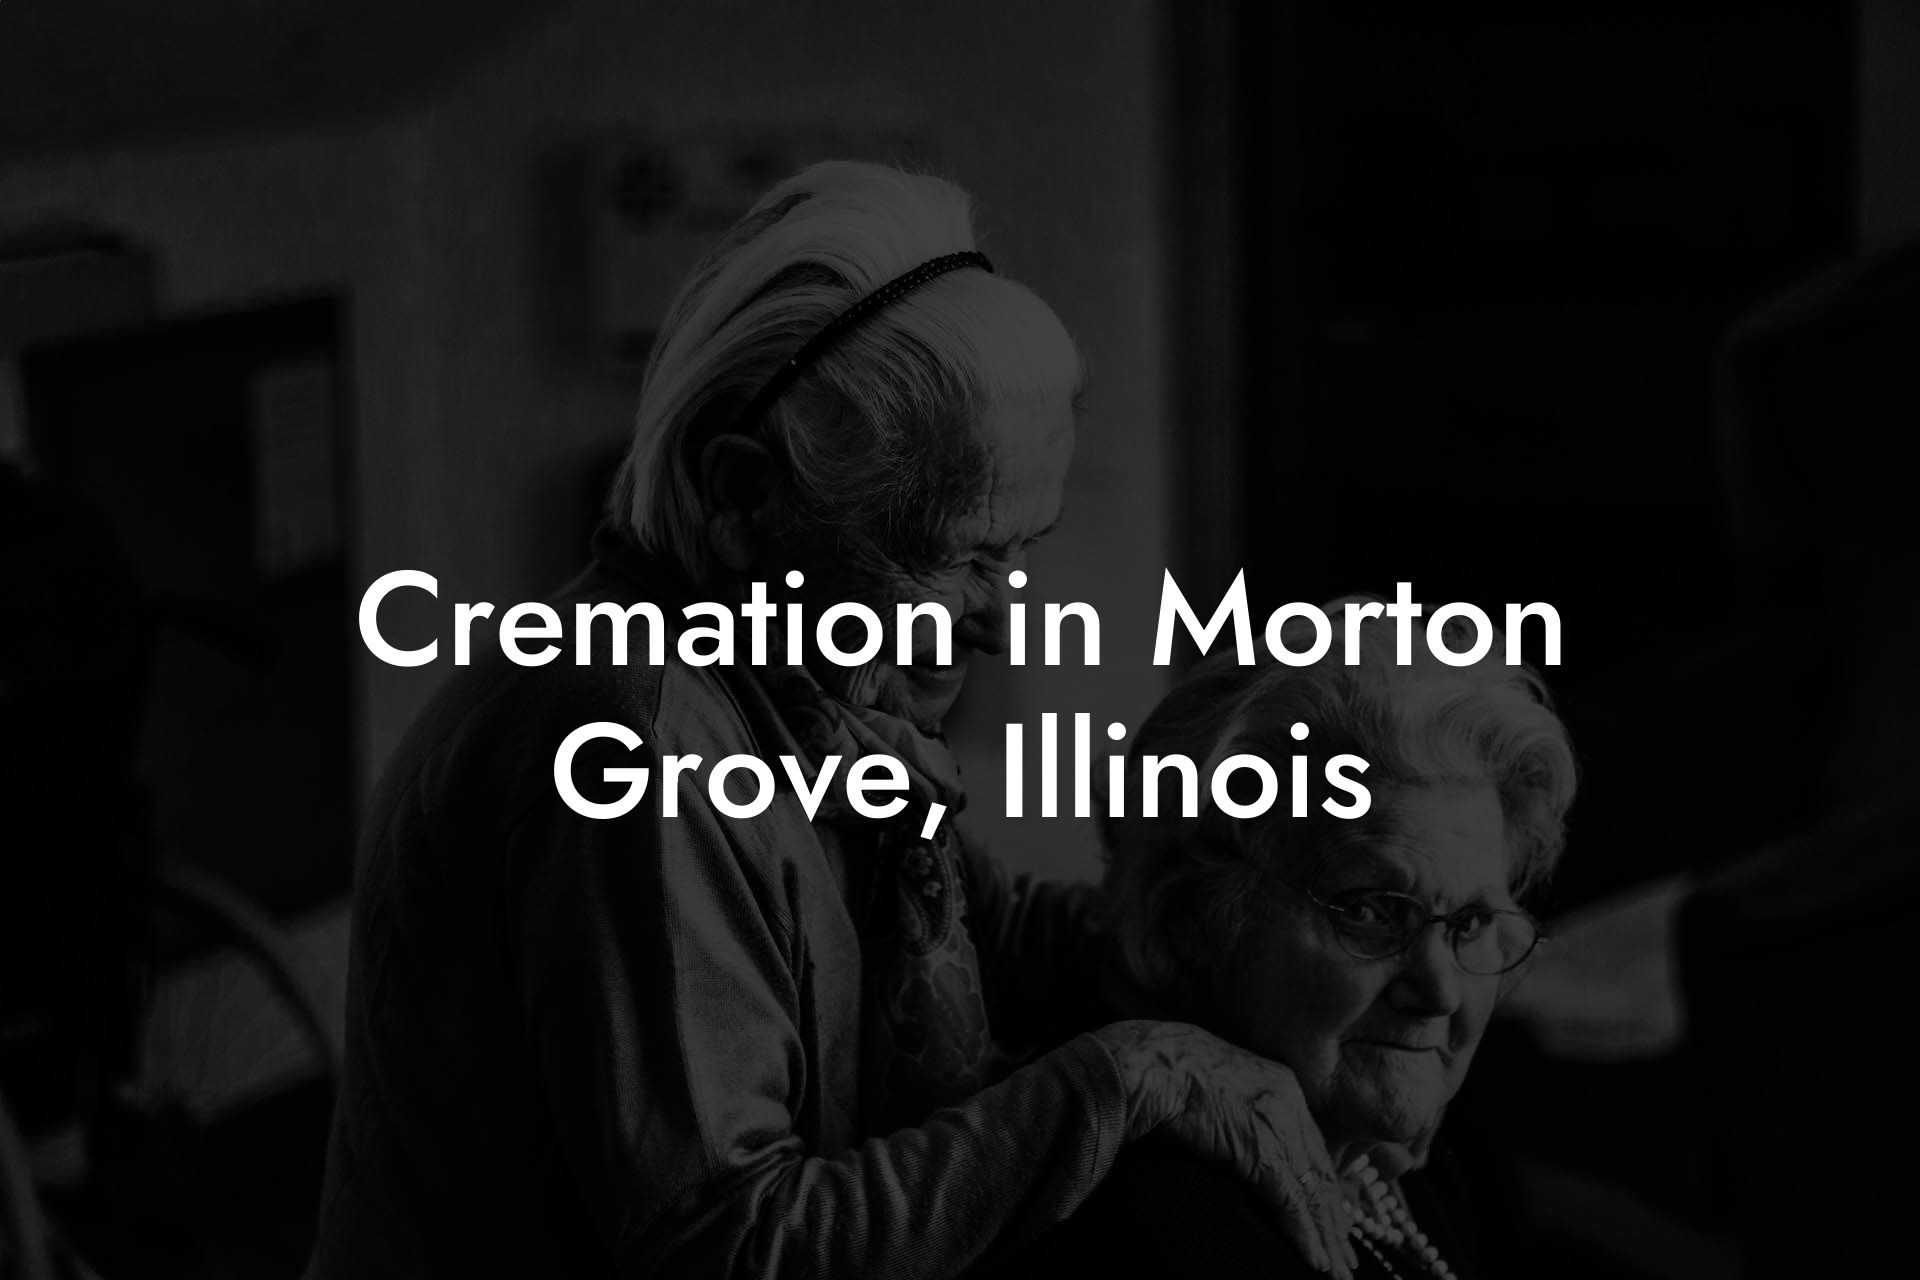 Cremation in Morton Grove, Illinois